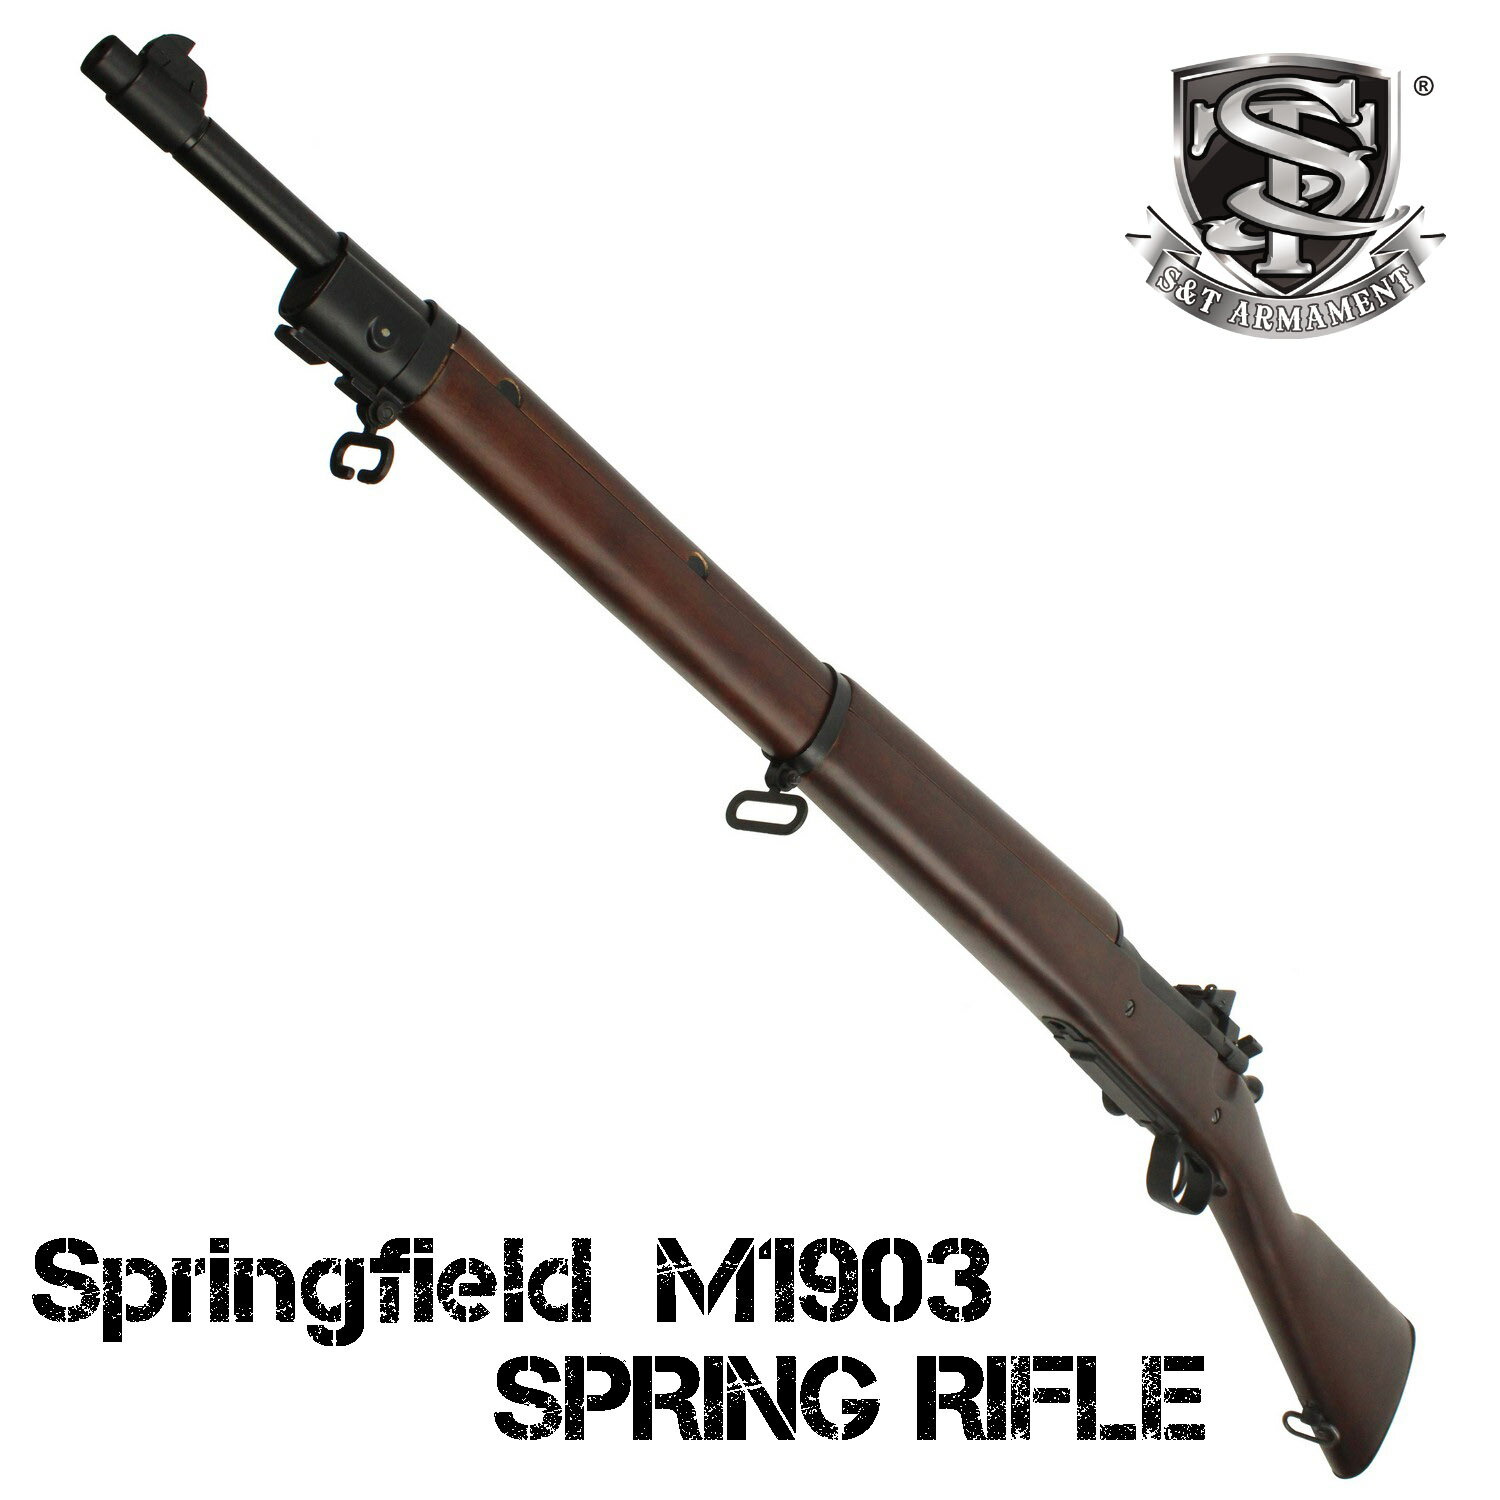 S T M1903 エアーコッキング ライフル (リアルウッド) 【180日間安心保証つき】